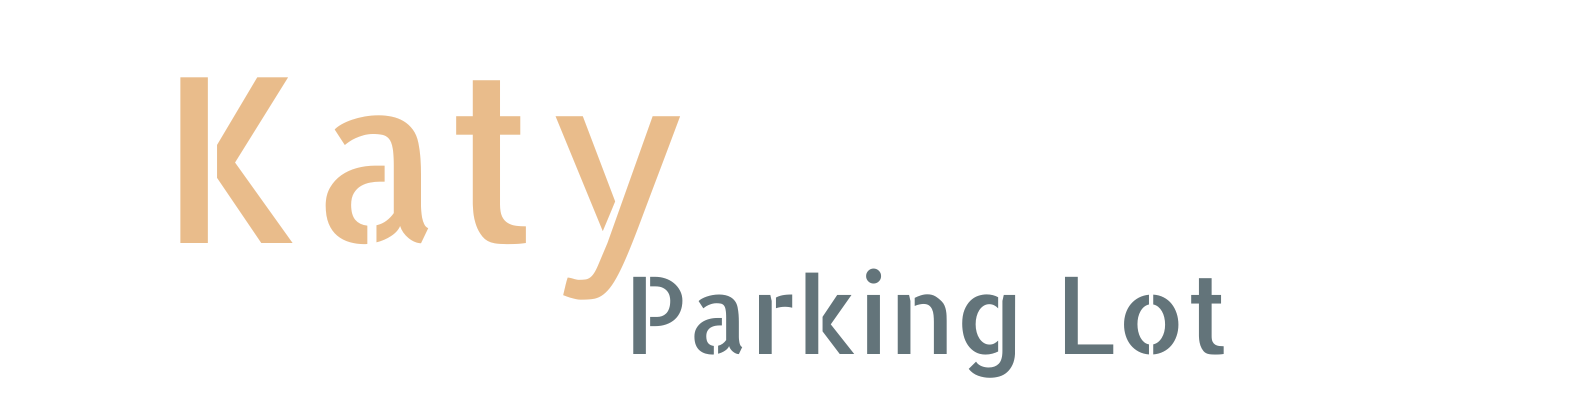 Katy Parking Lot Katy Texas Logos